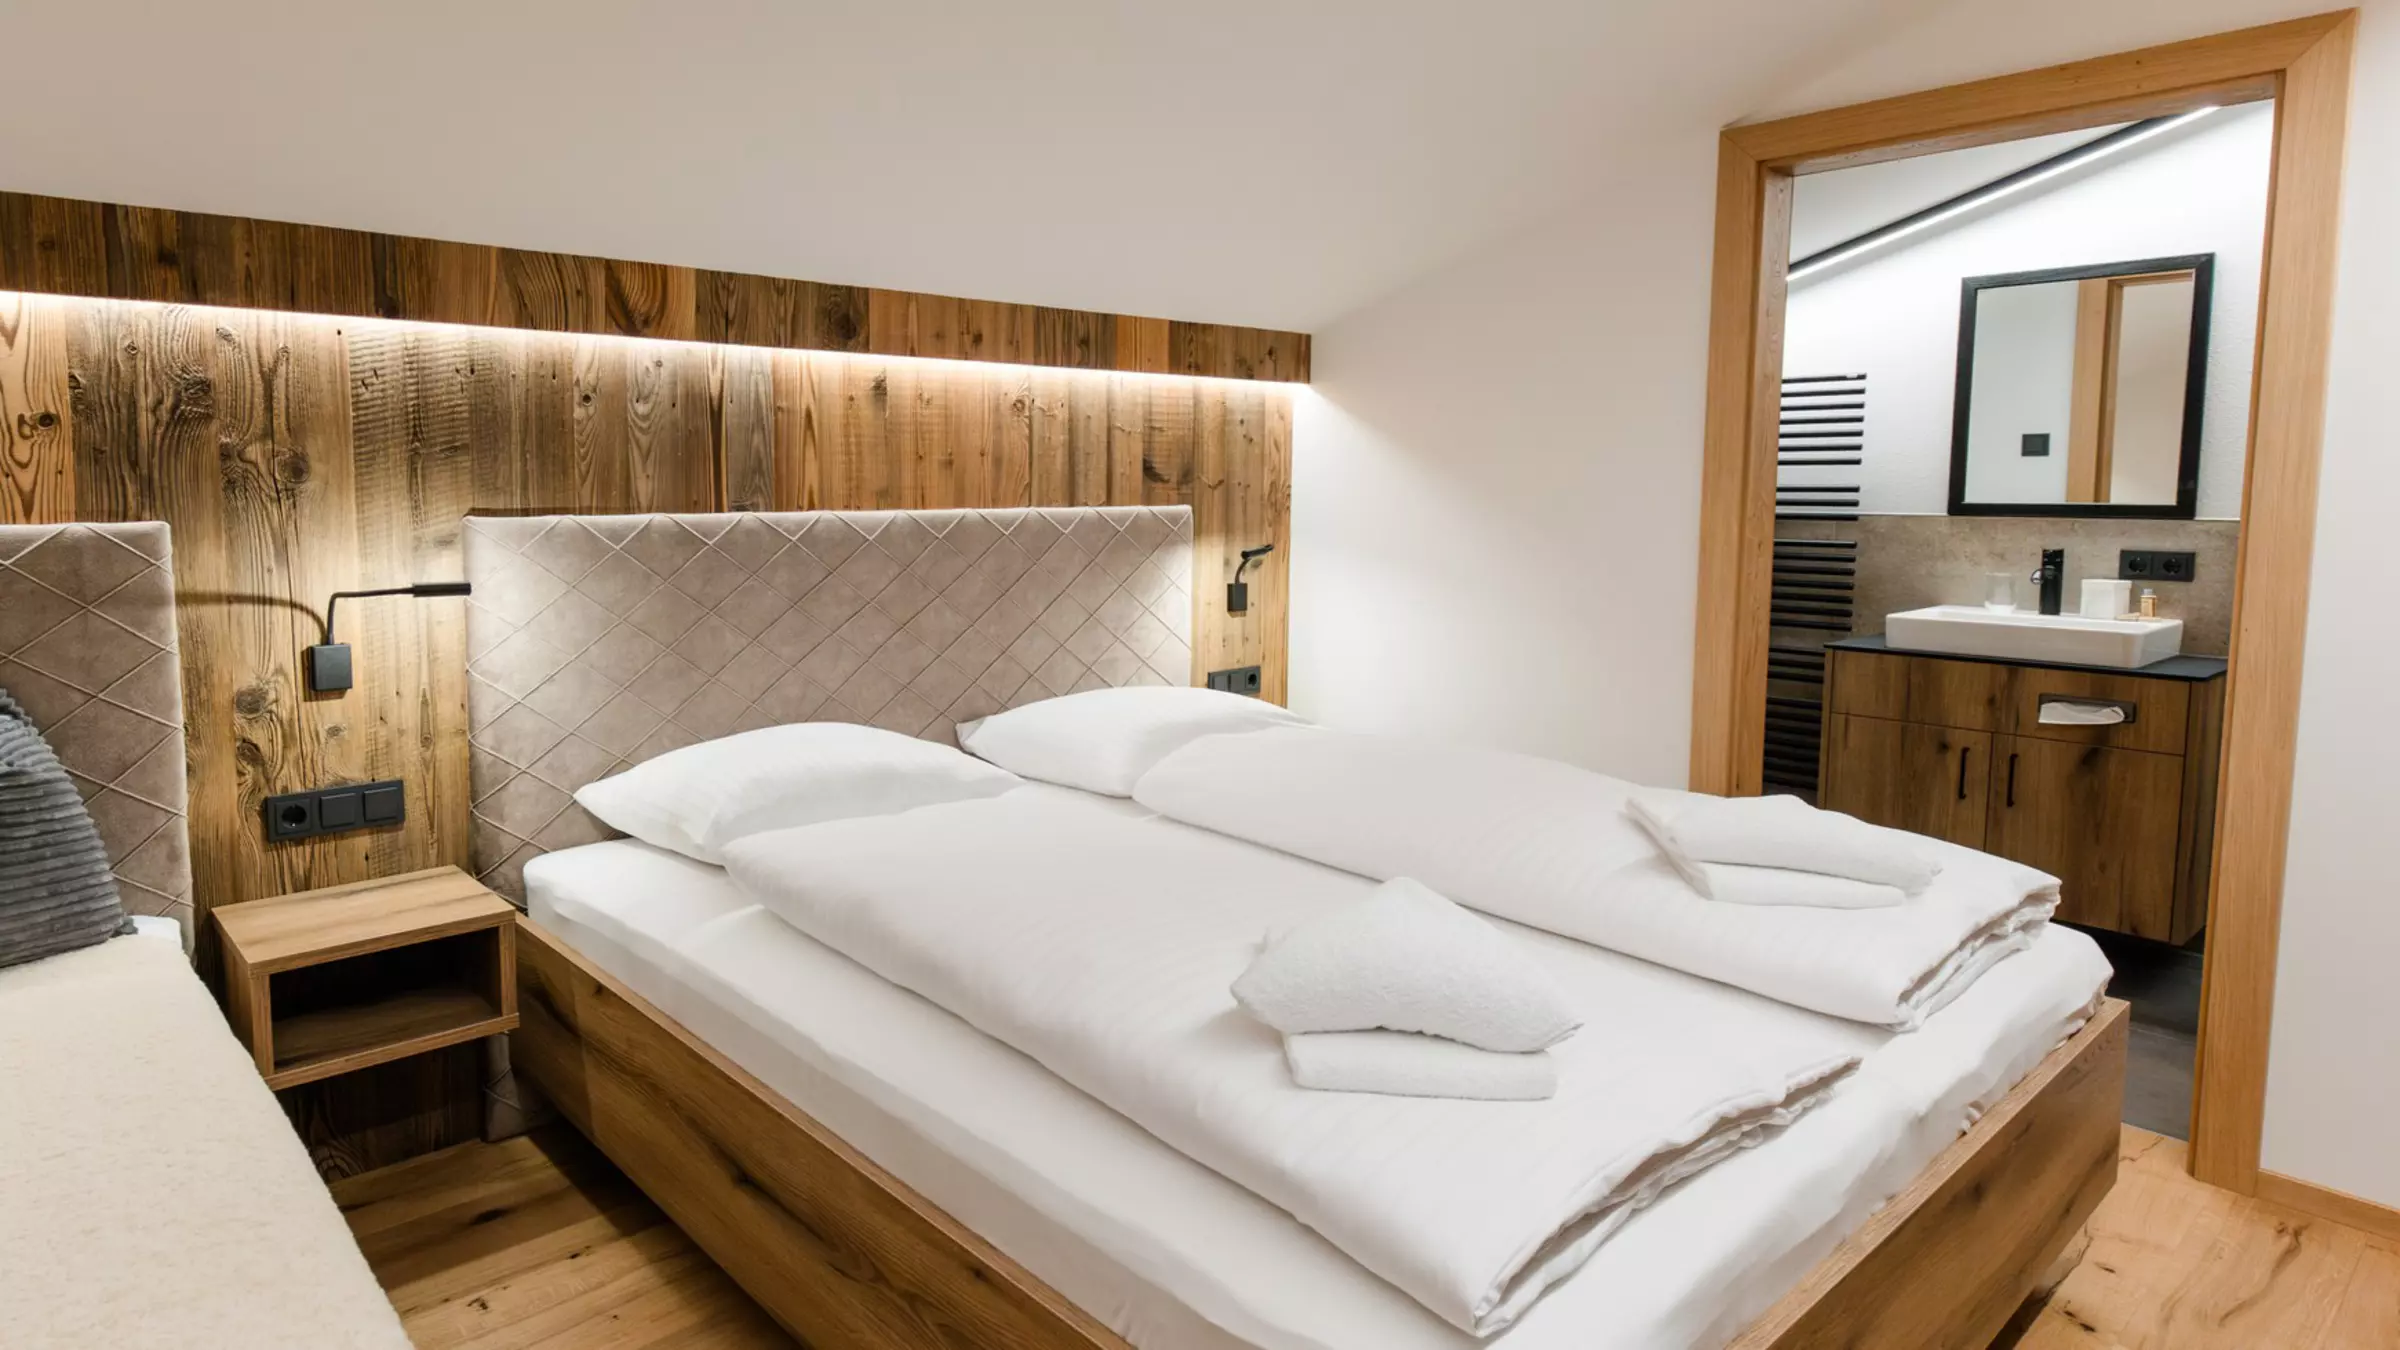 Schlafzimmer mit Holz und geöffneter Badezimmertür